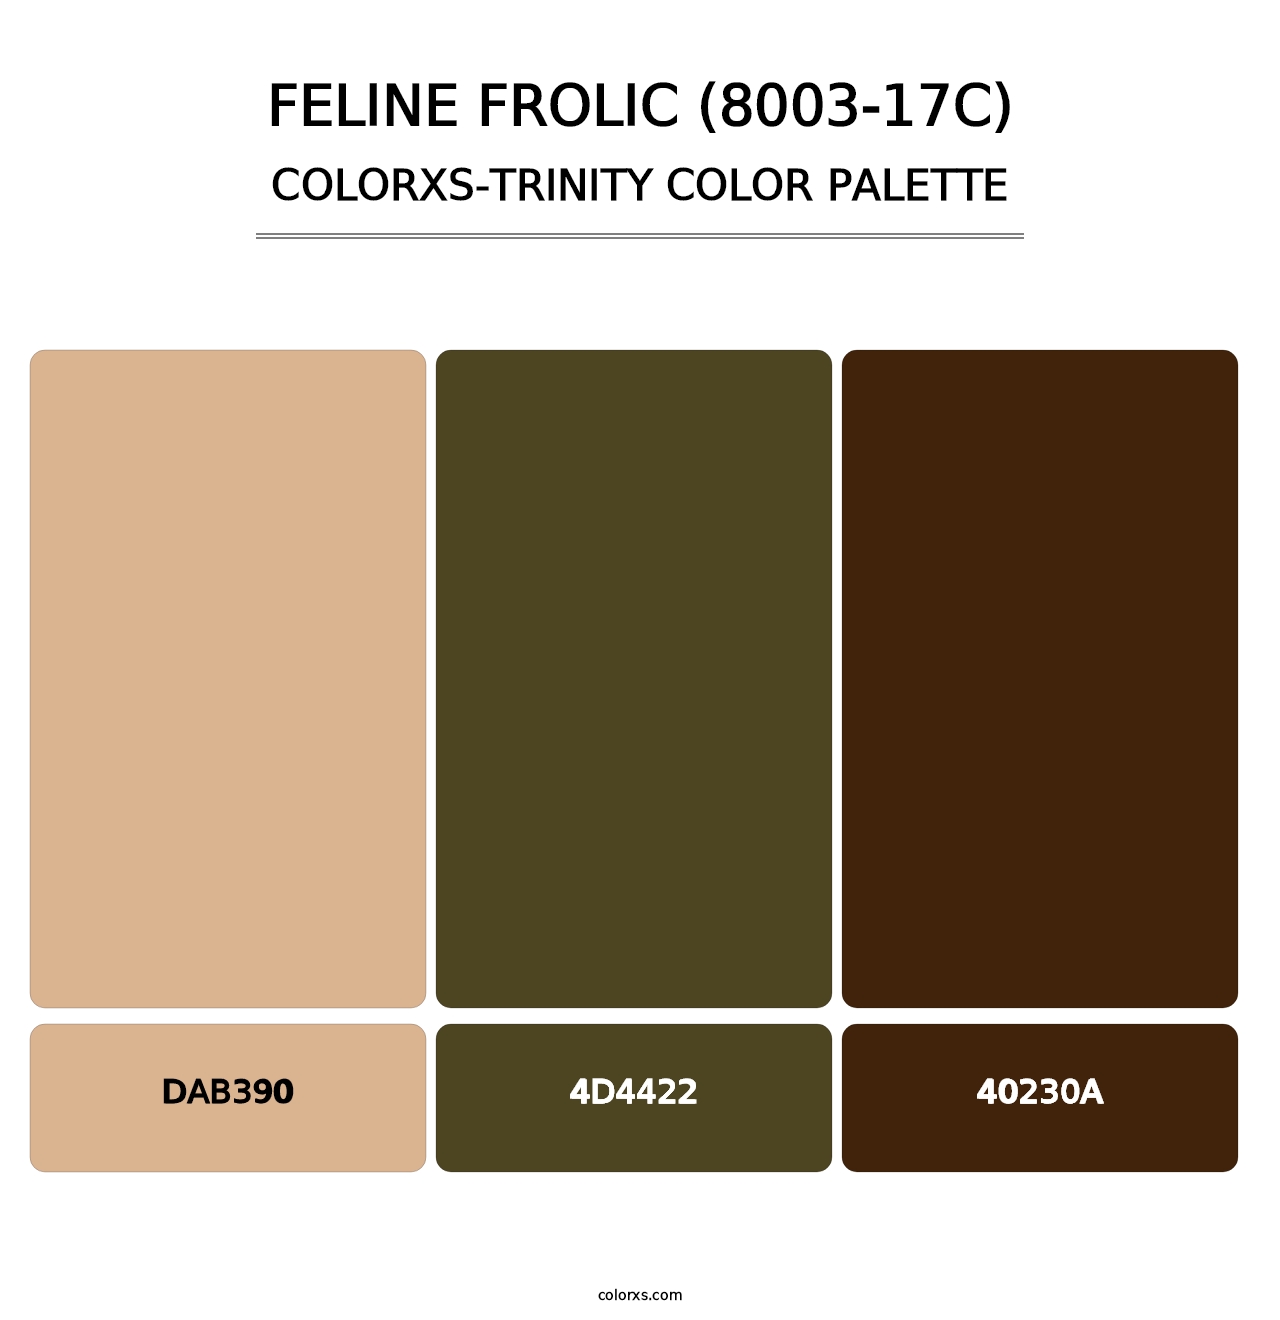 Feline Frolic (8003-17C) - Colorxs Trinity Palette